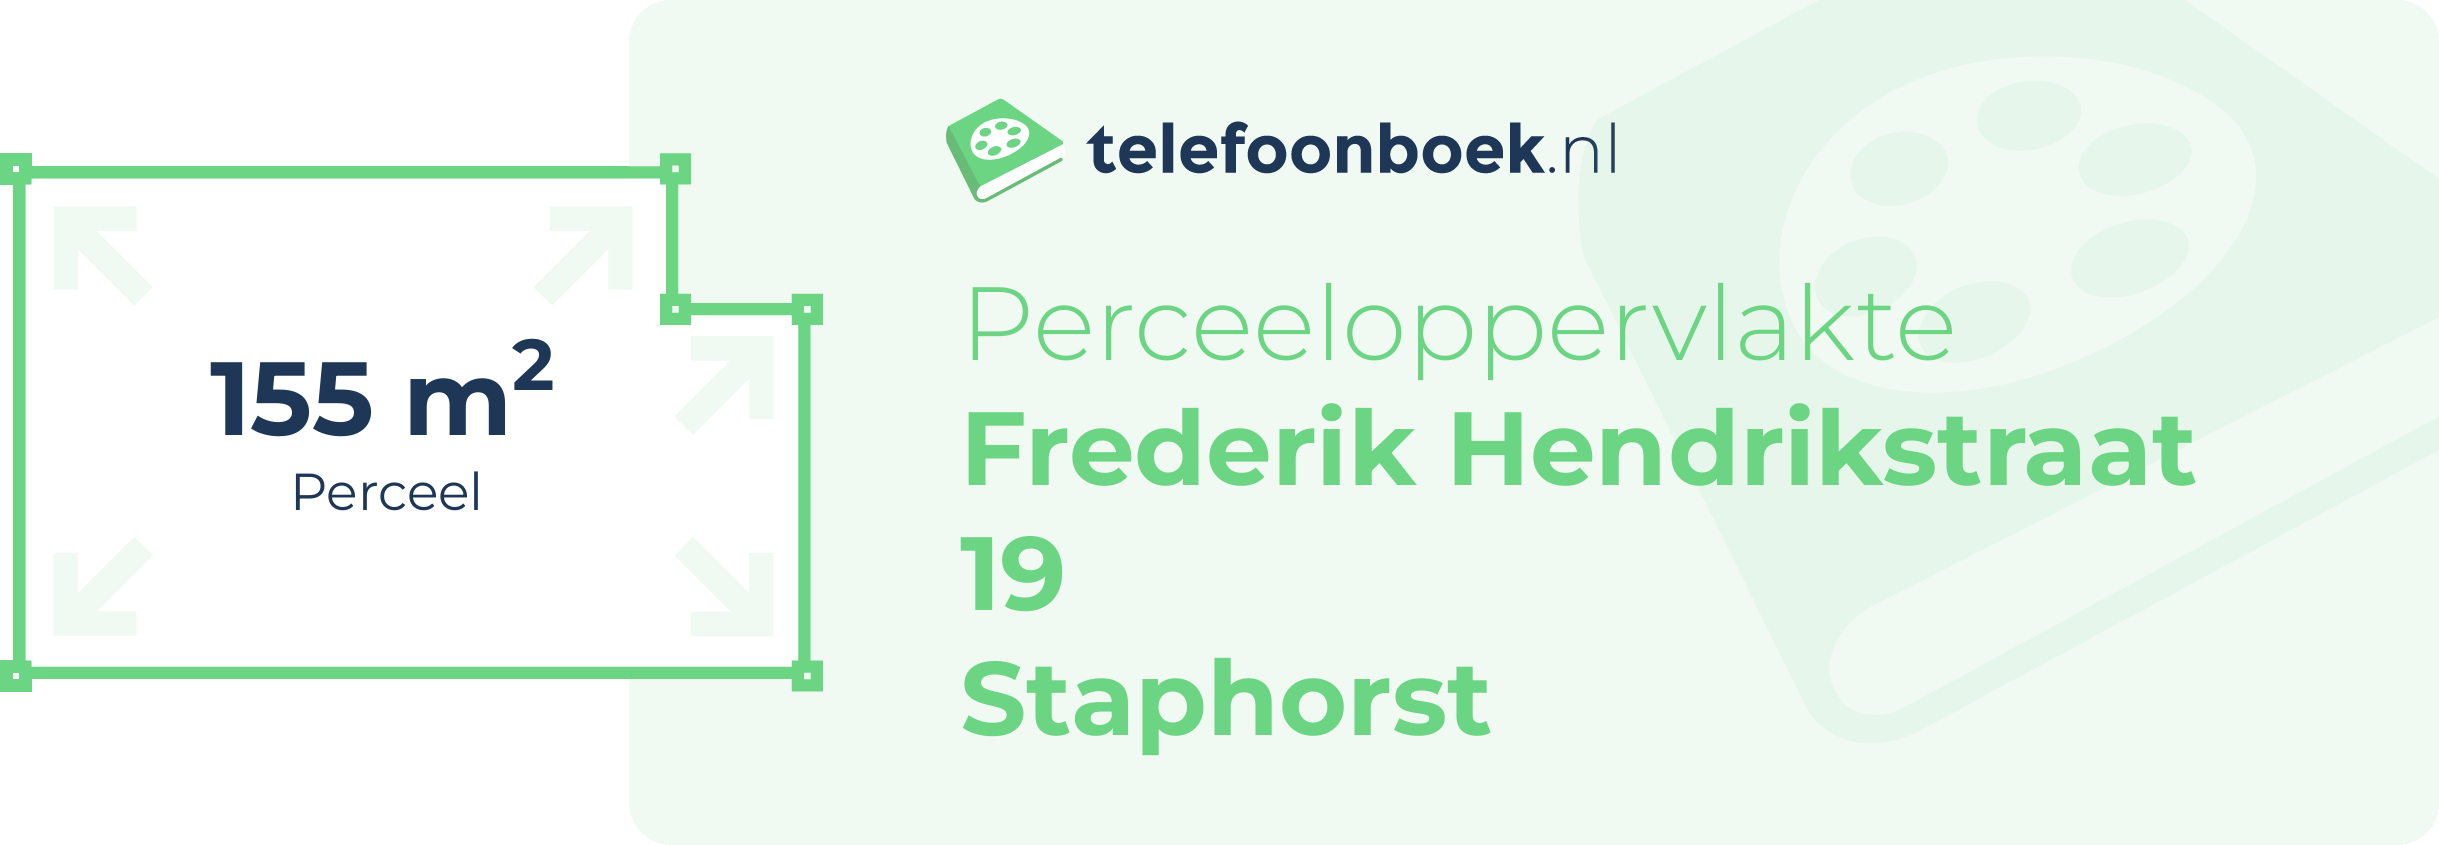 Perceeloppervlakte Frederik Hendrikstraat 19 Staphorst